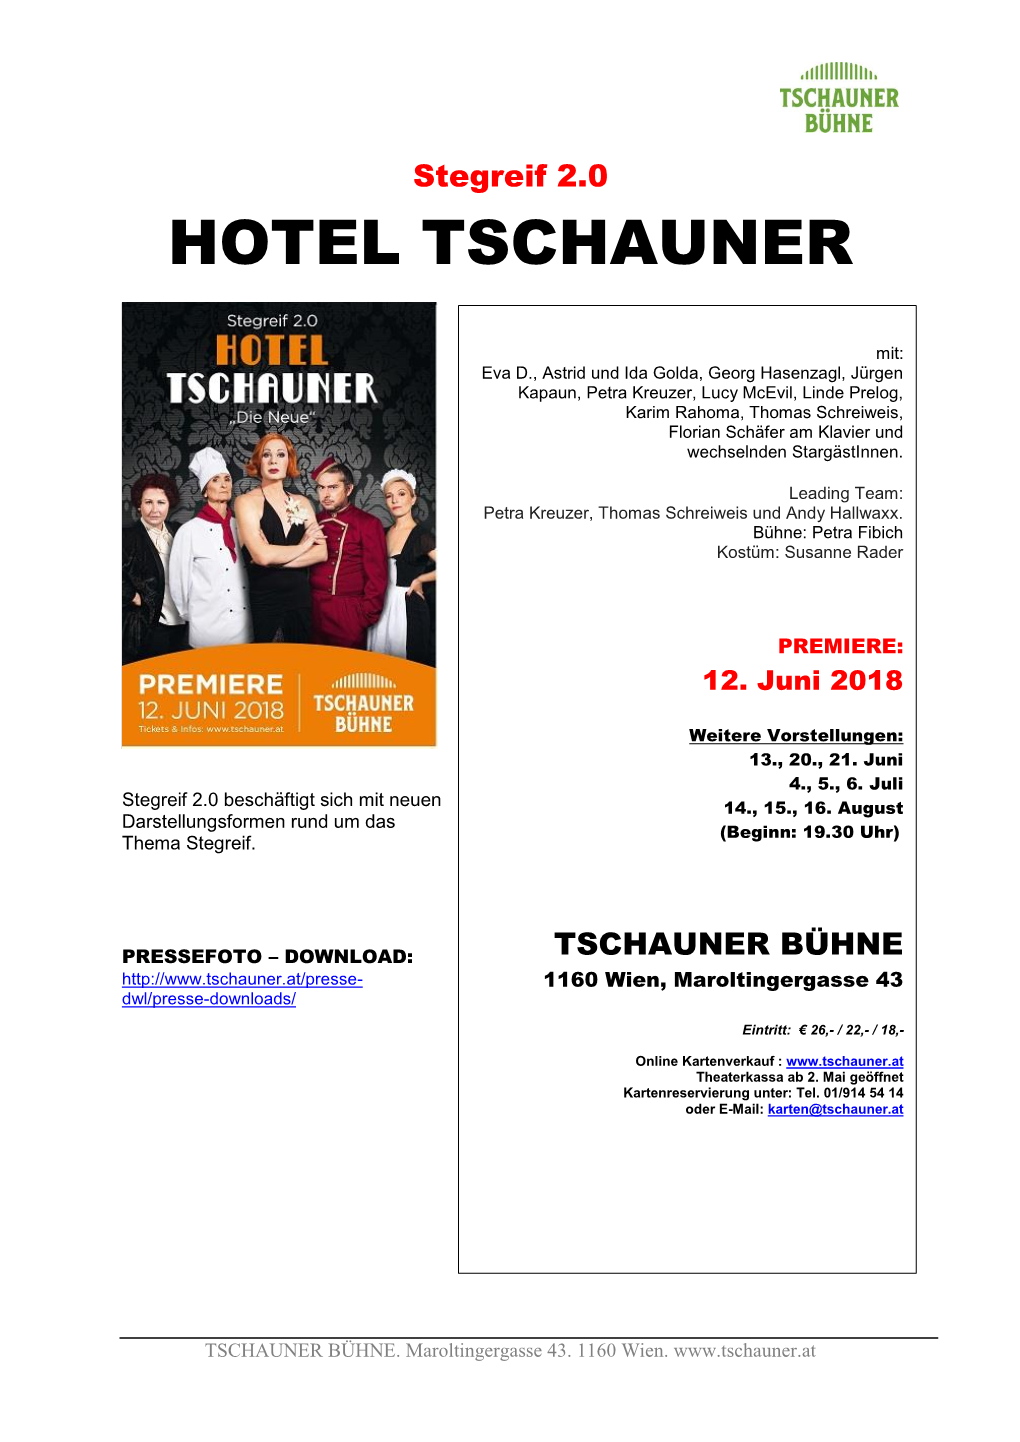 Hotel Tschauner